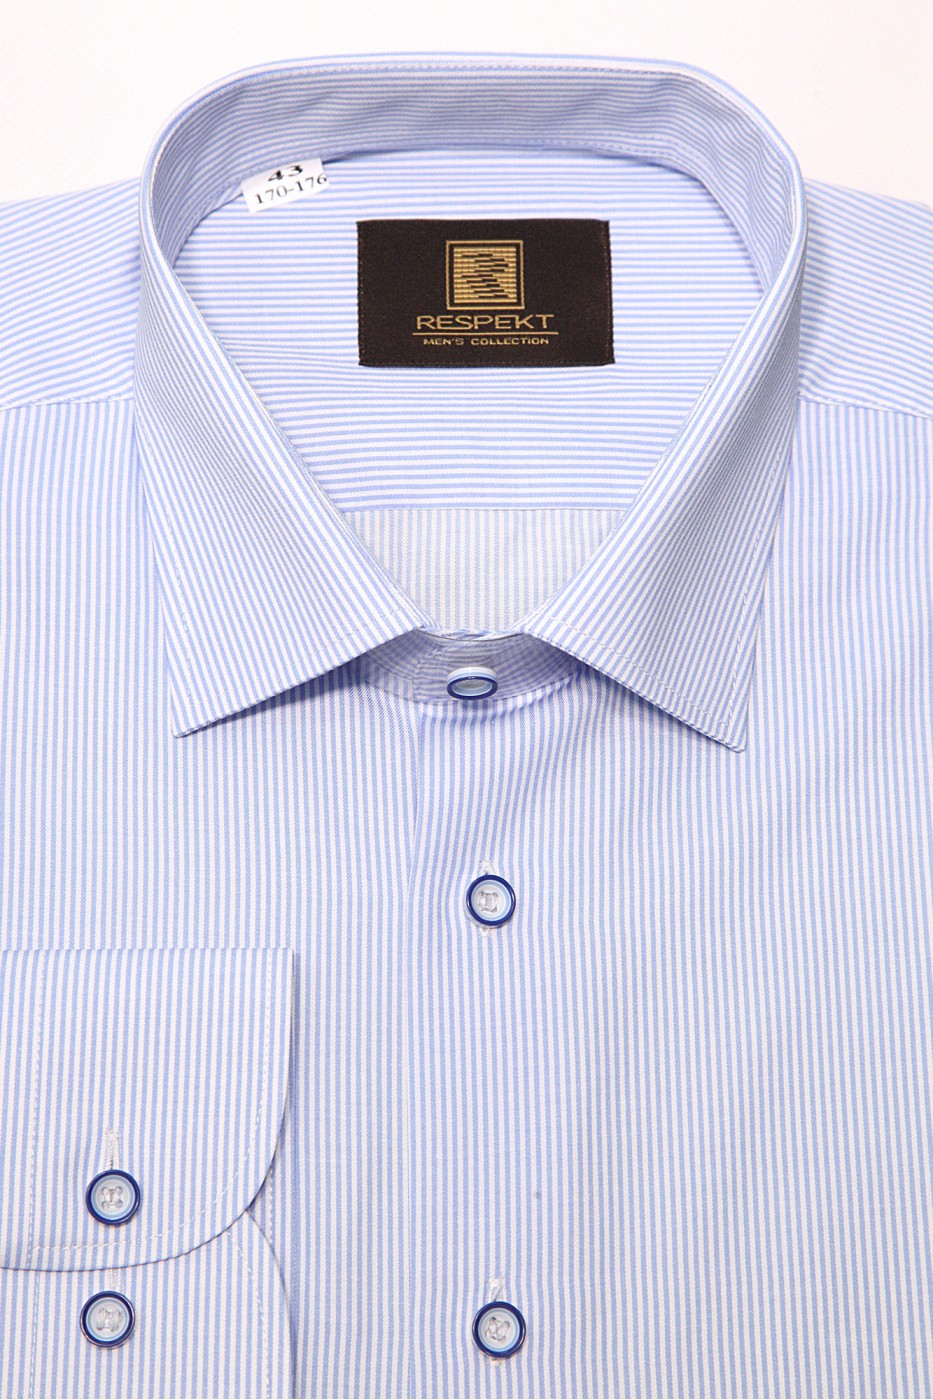 Голубая мужская классическая рубашка в мелкую полоску 341 (54-07)